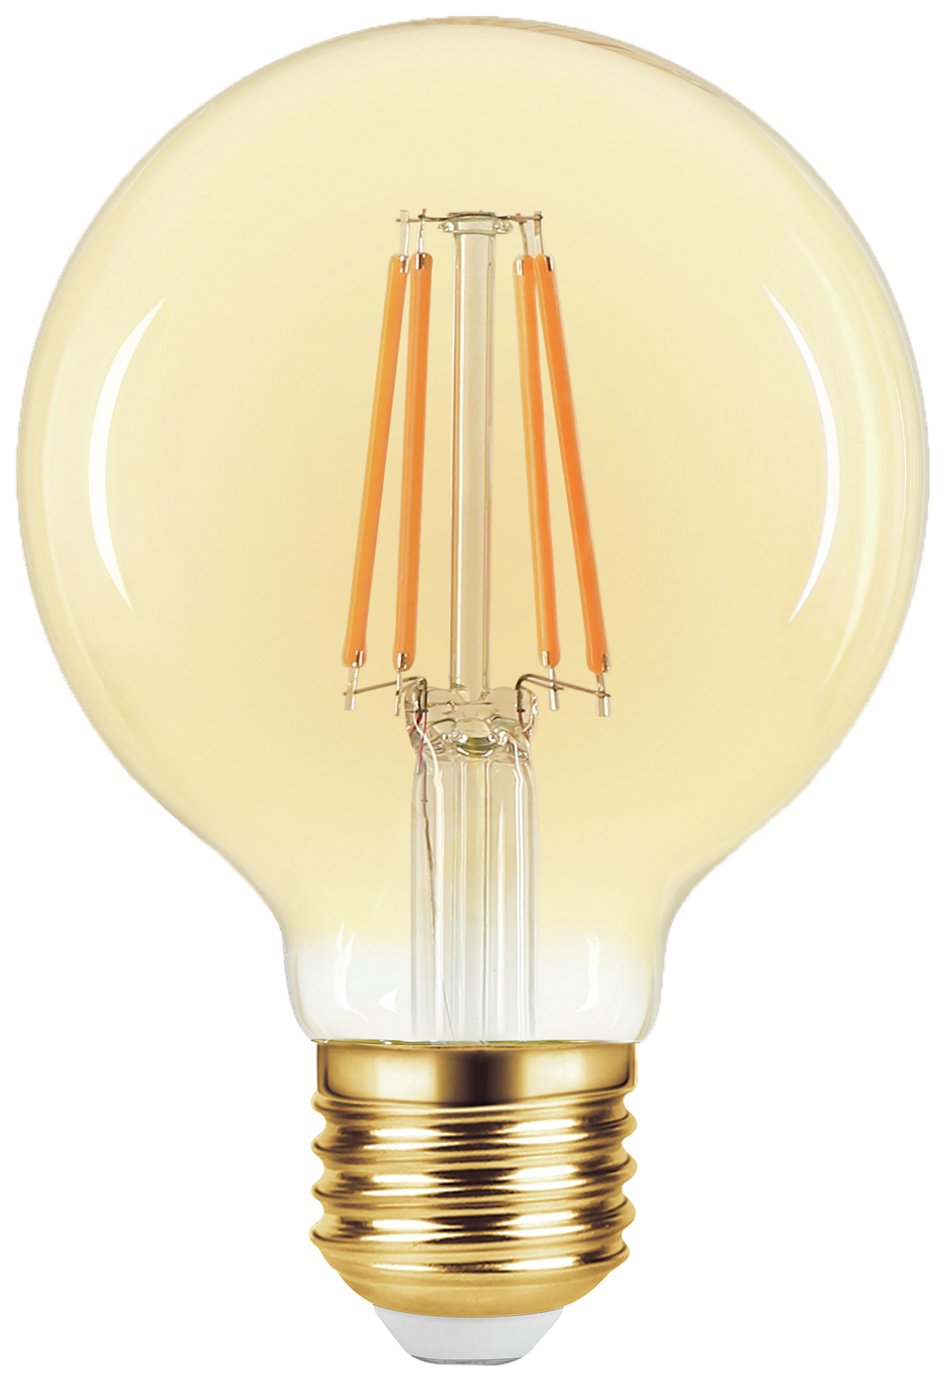 Argos Home 3.6W LED ES Light Bulb